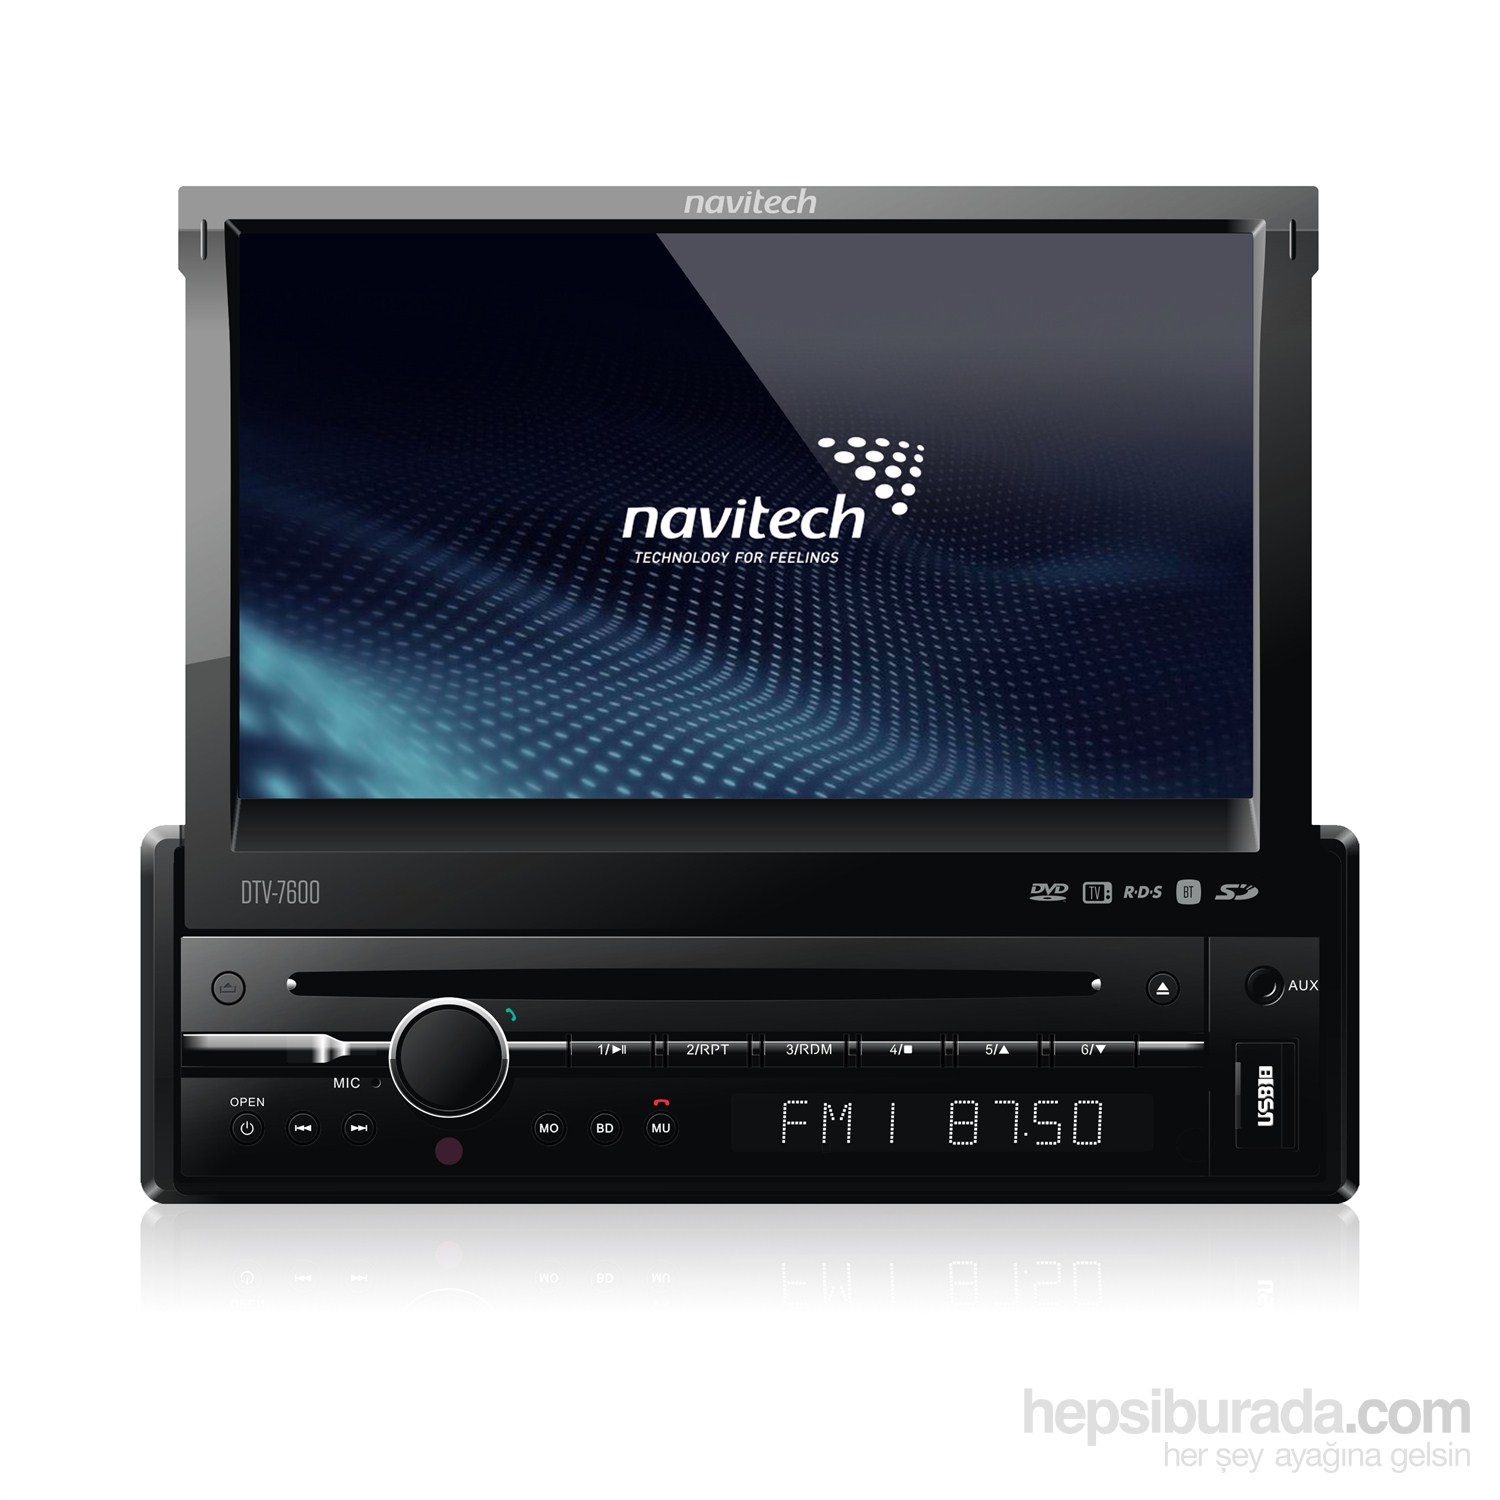 Navitech DTV-7600 7” Araç Multimedya Oynatıcı